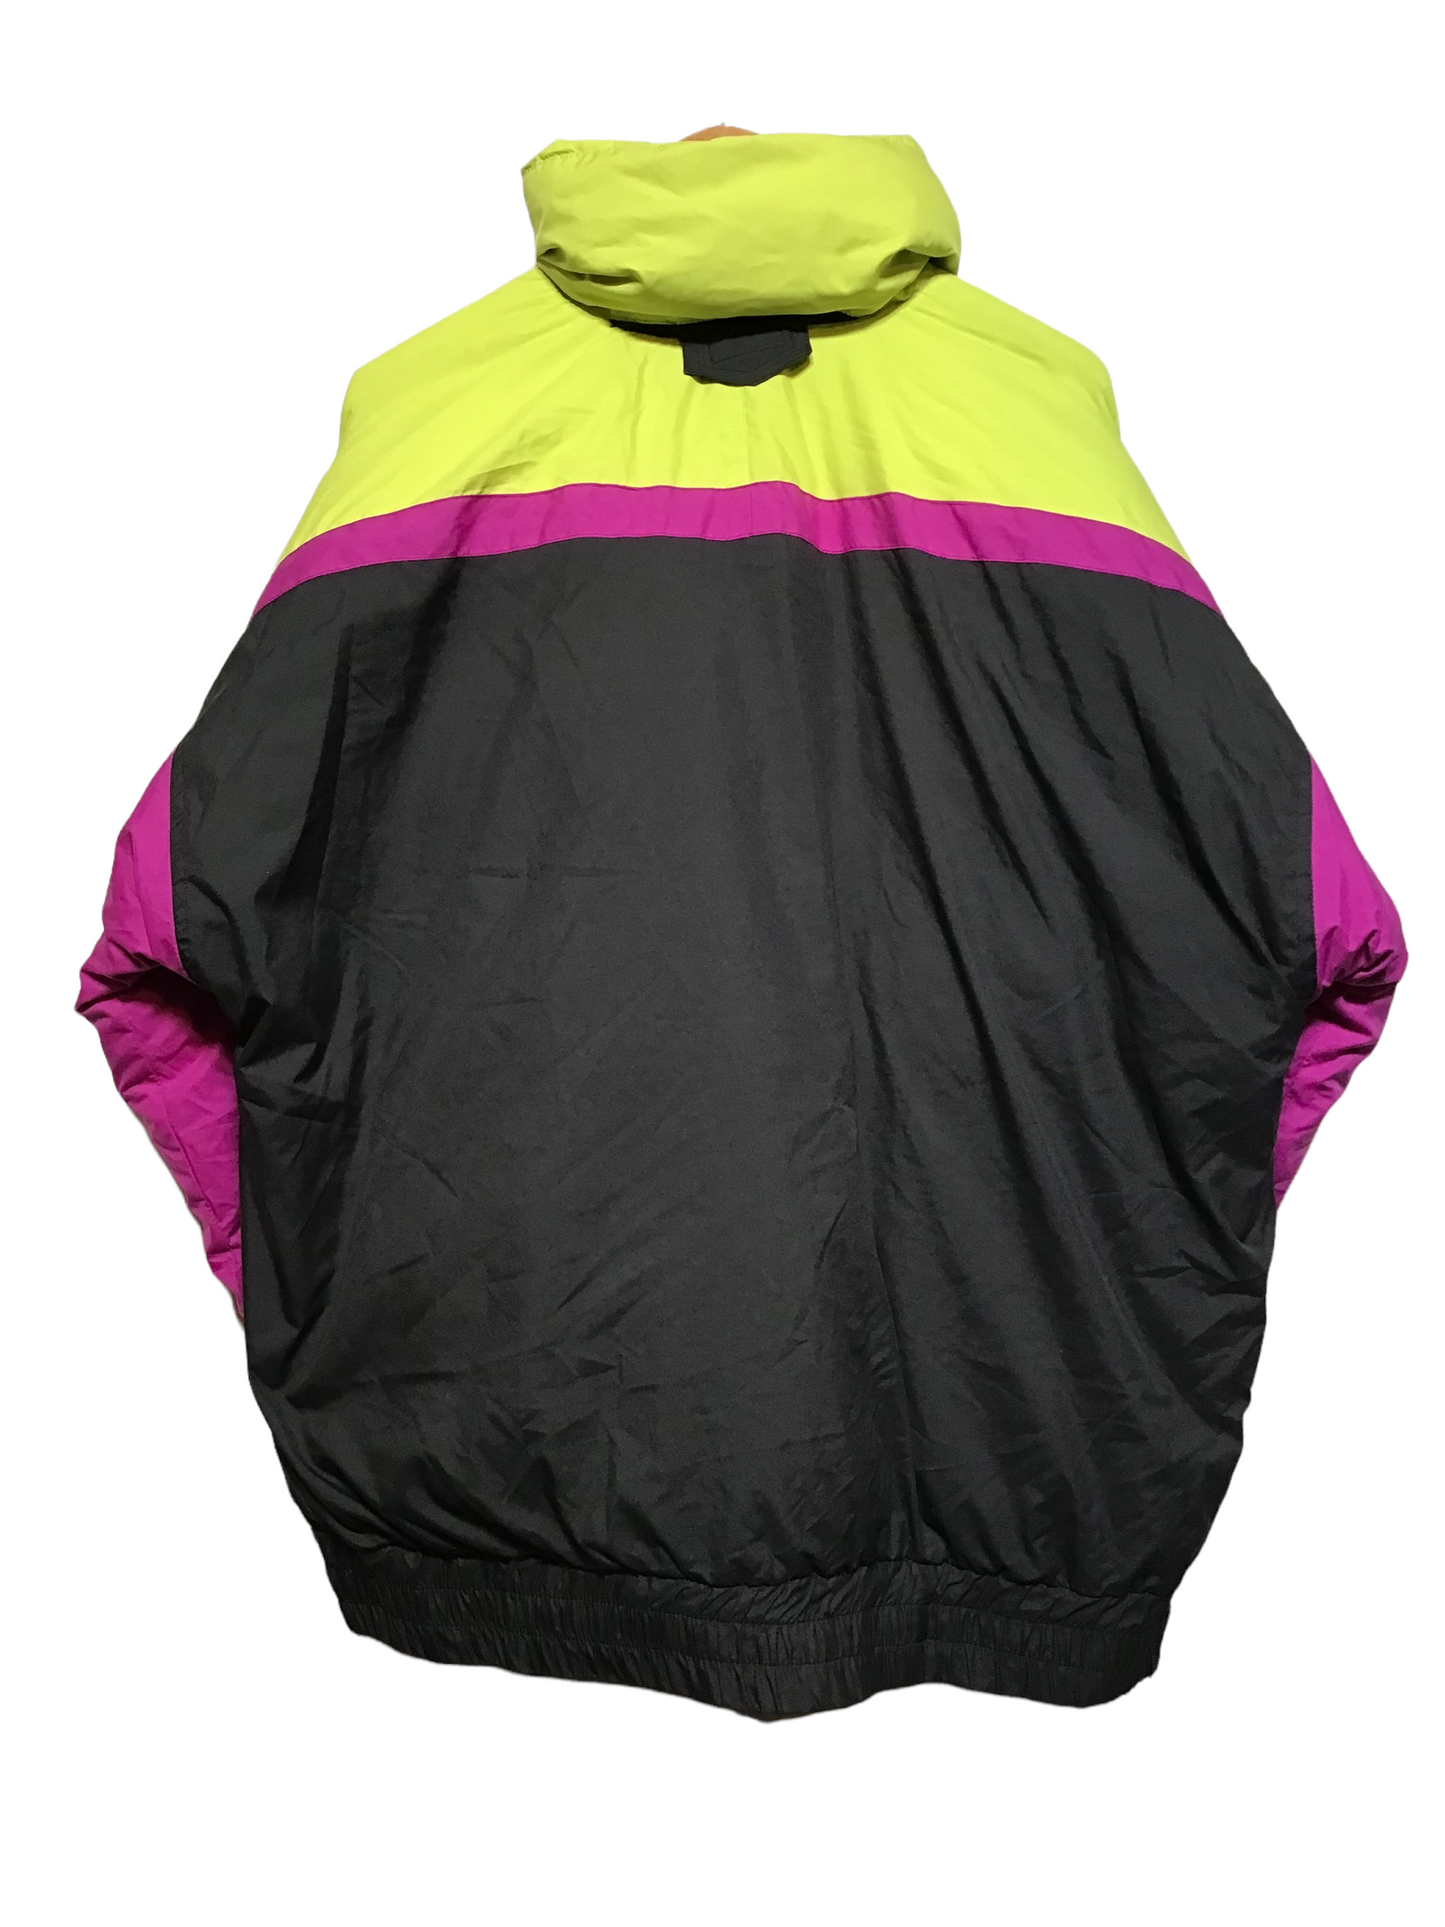 Anzoni Ski Jacket (Size XXL)